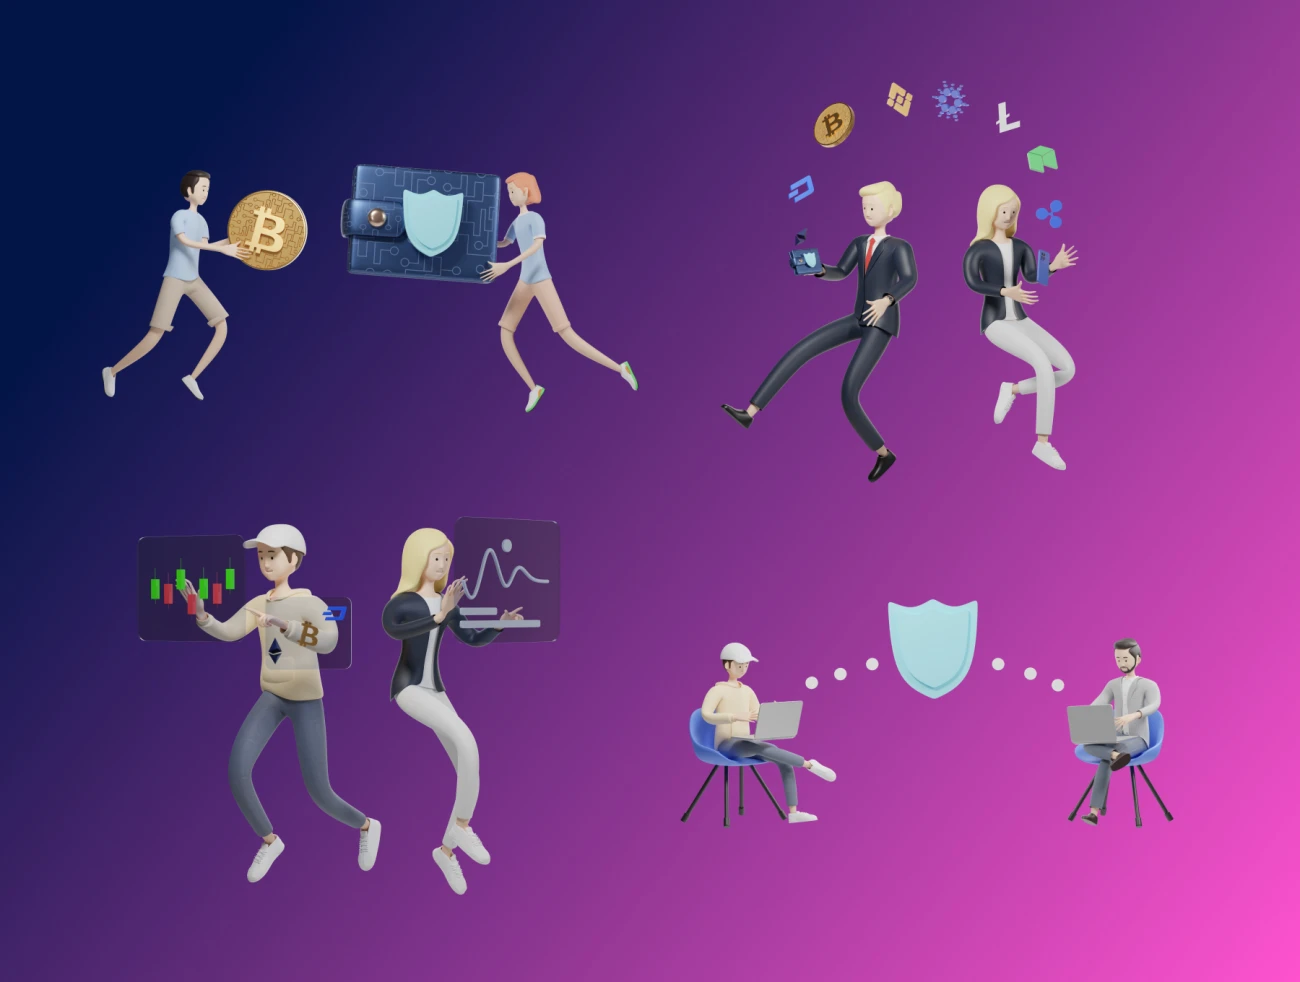 200款加密货币3D人物角色和元素插图合集 3D Character Pack Crypto Illustration & 3D Elements object-3D/图标、人物插画、商业金融、场景插画、插画、插画功能、电子商务、虚拟货币、金融理财-到位啦UI